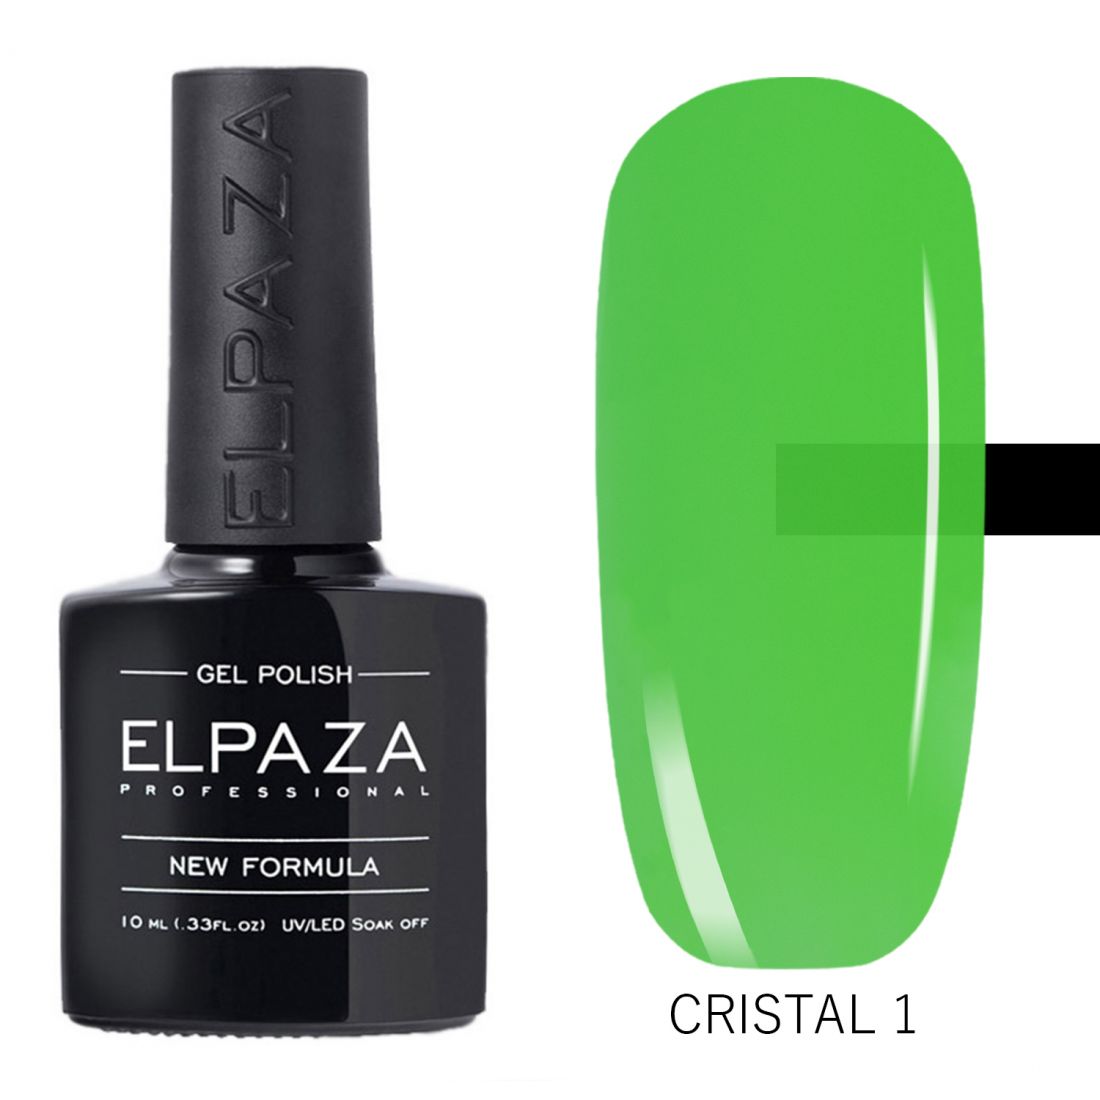 Elpaza Cristal витражный гель-лак №1   10 мл